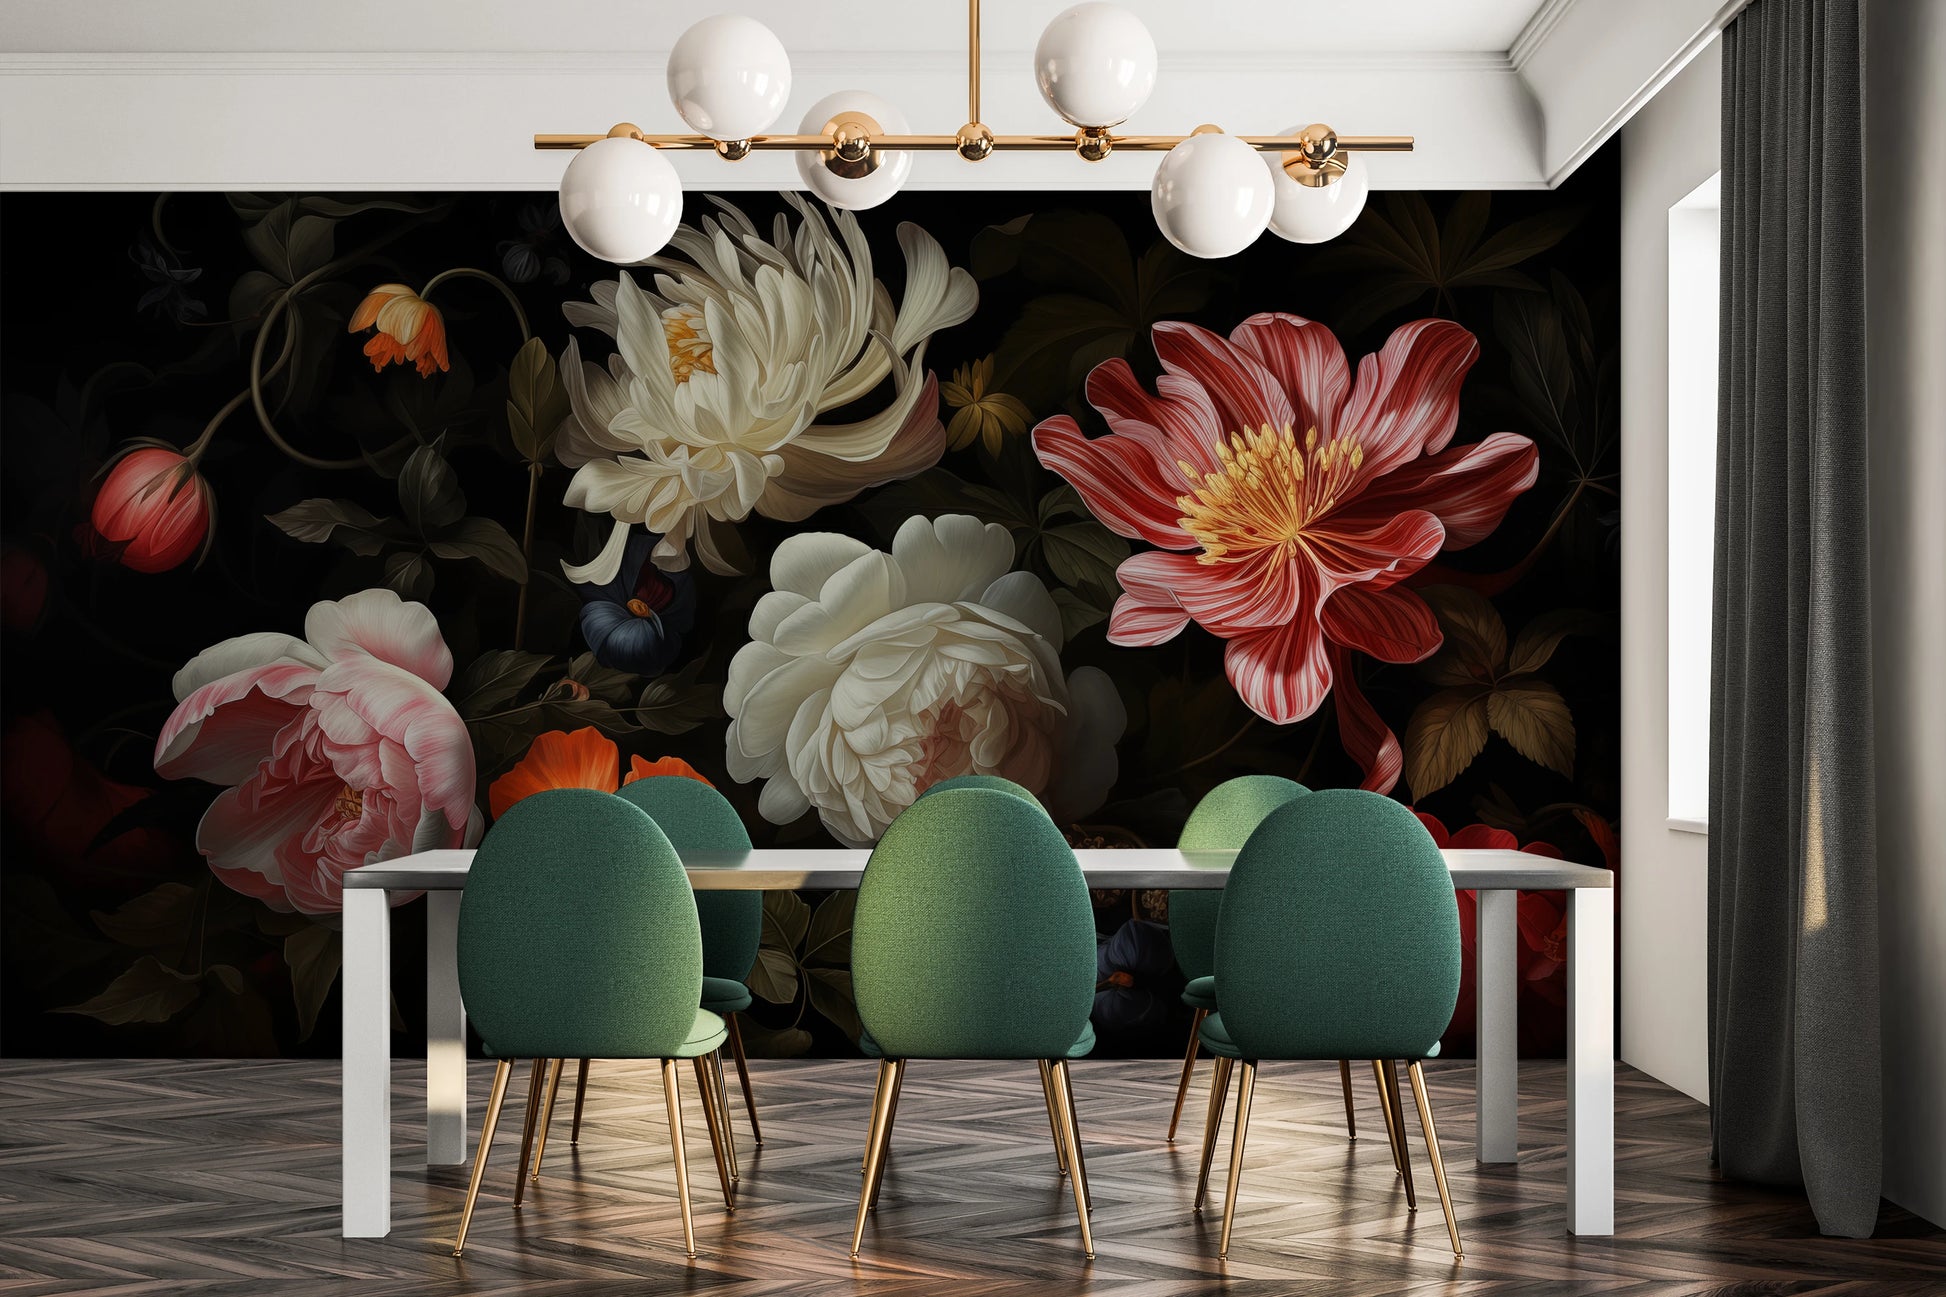 Fototapeta o nazwie Dutch Floral Masterpiece użyta w aranzacji wnętrza.